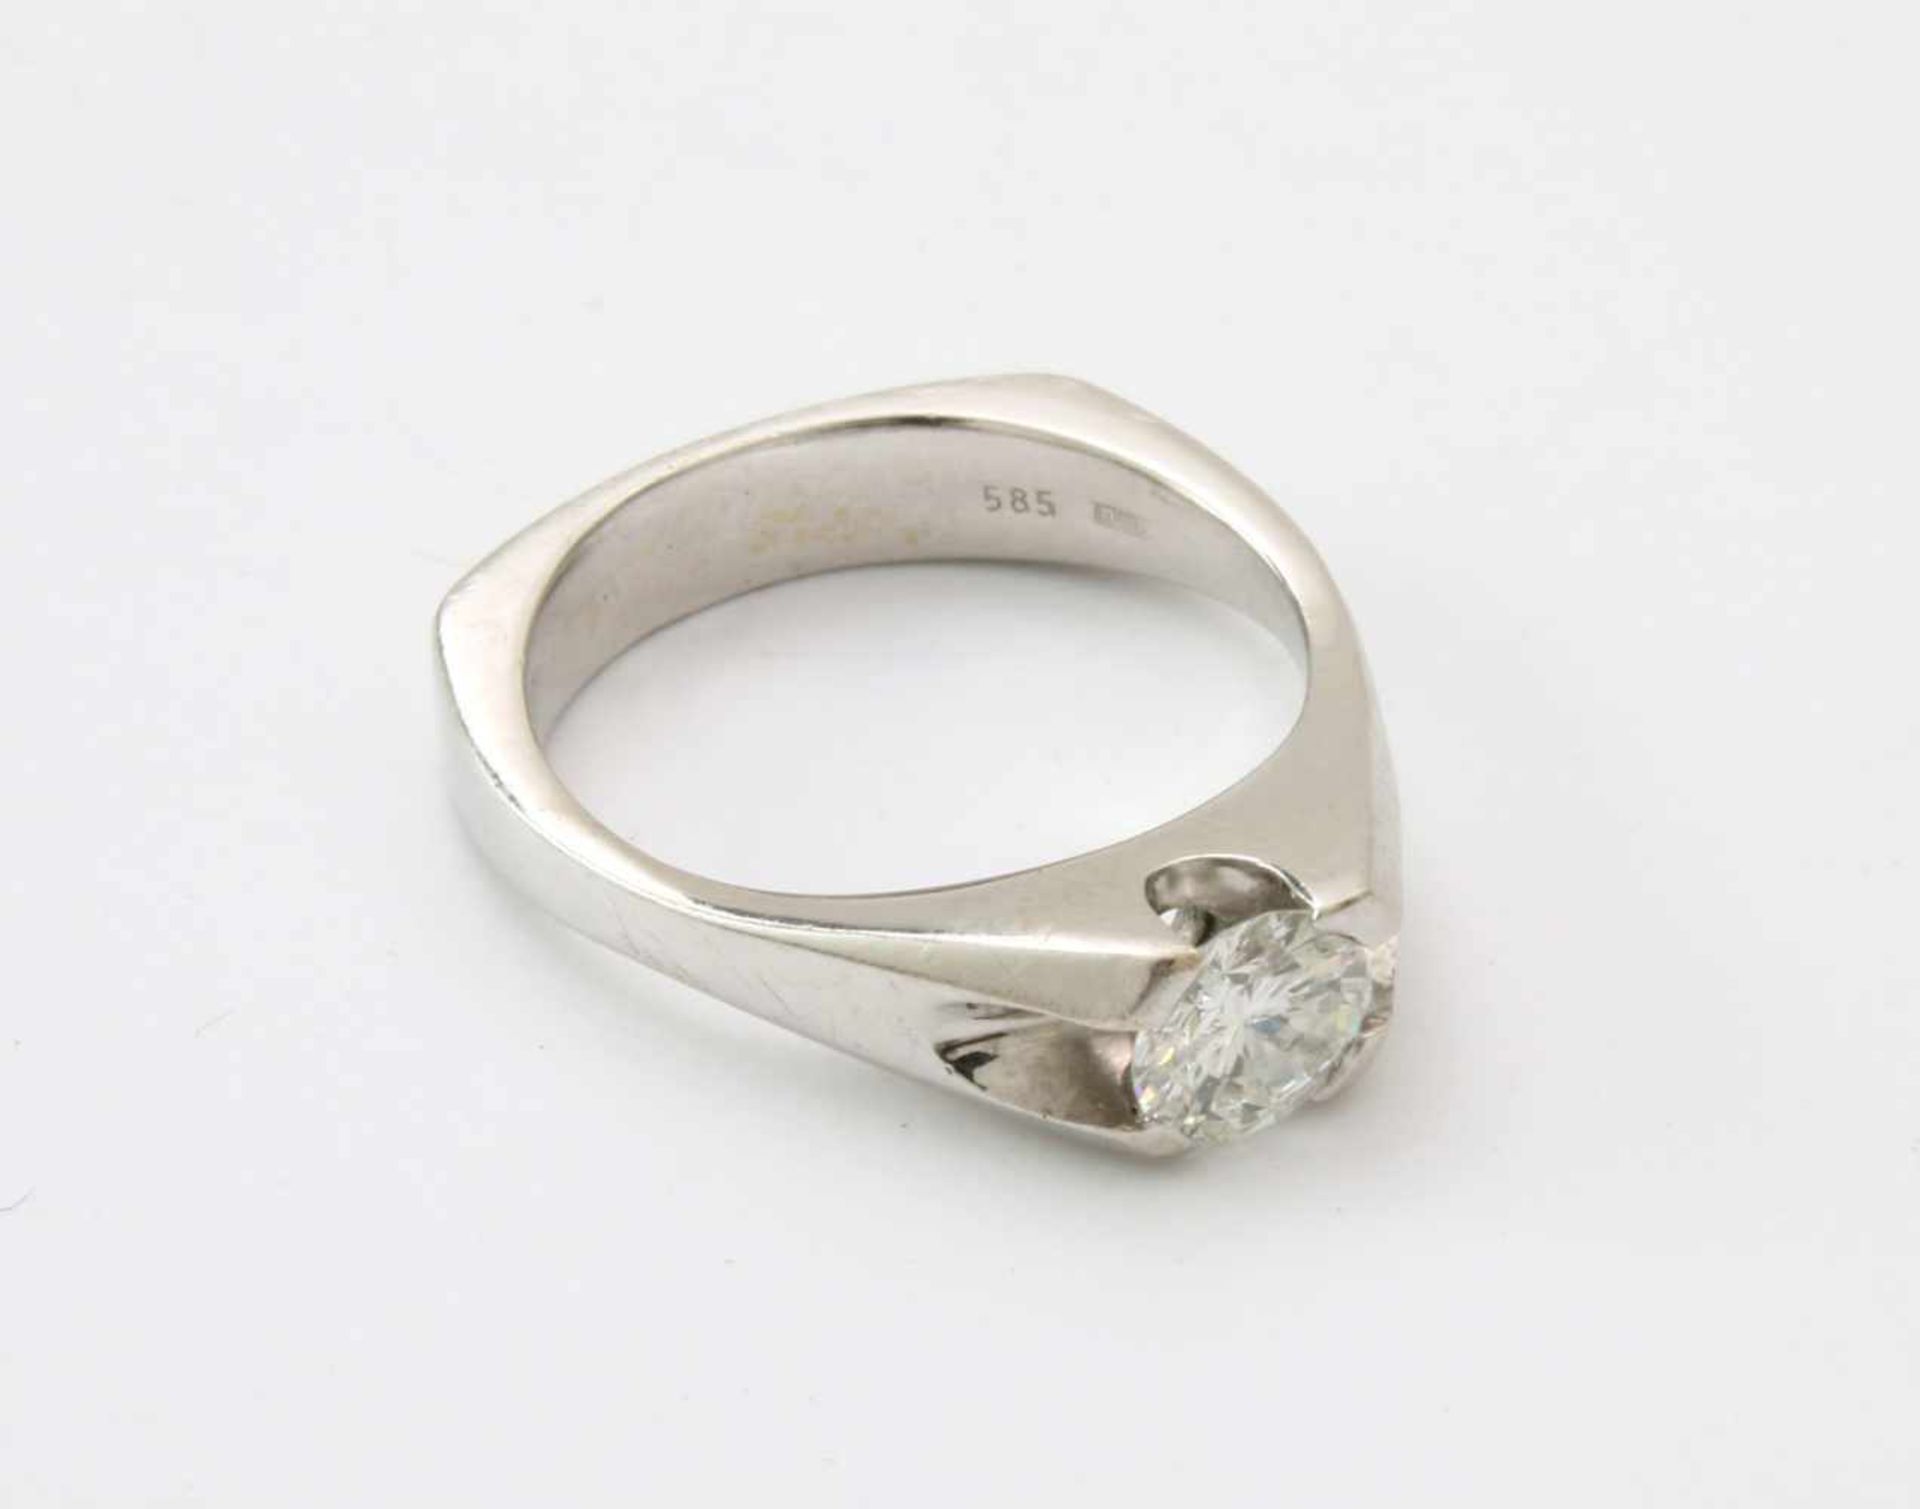 Weißgold-Ring mit Brillant SolitärWG 585, Brillant 0,59 ct., gute Qualität, w/si, Ringgröße: 53/